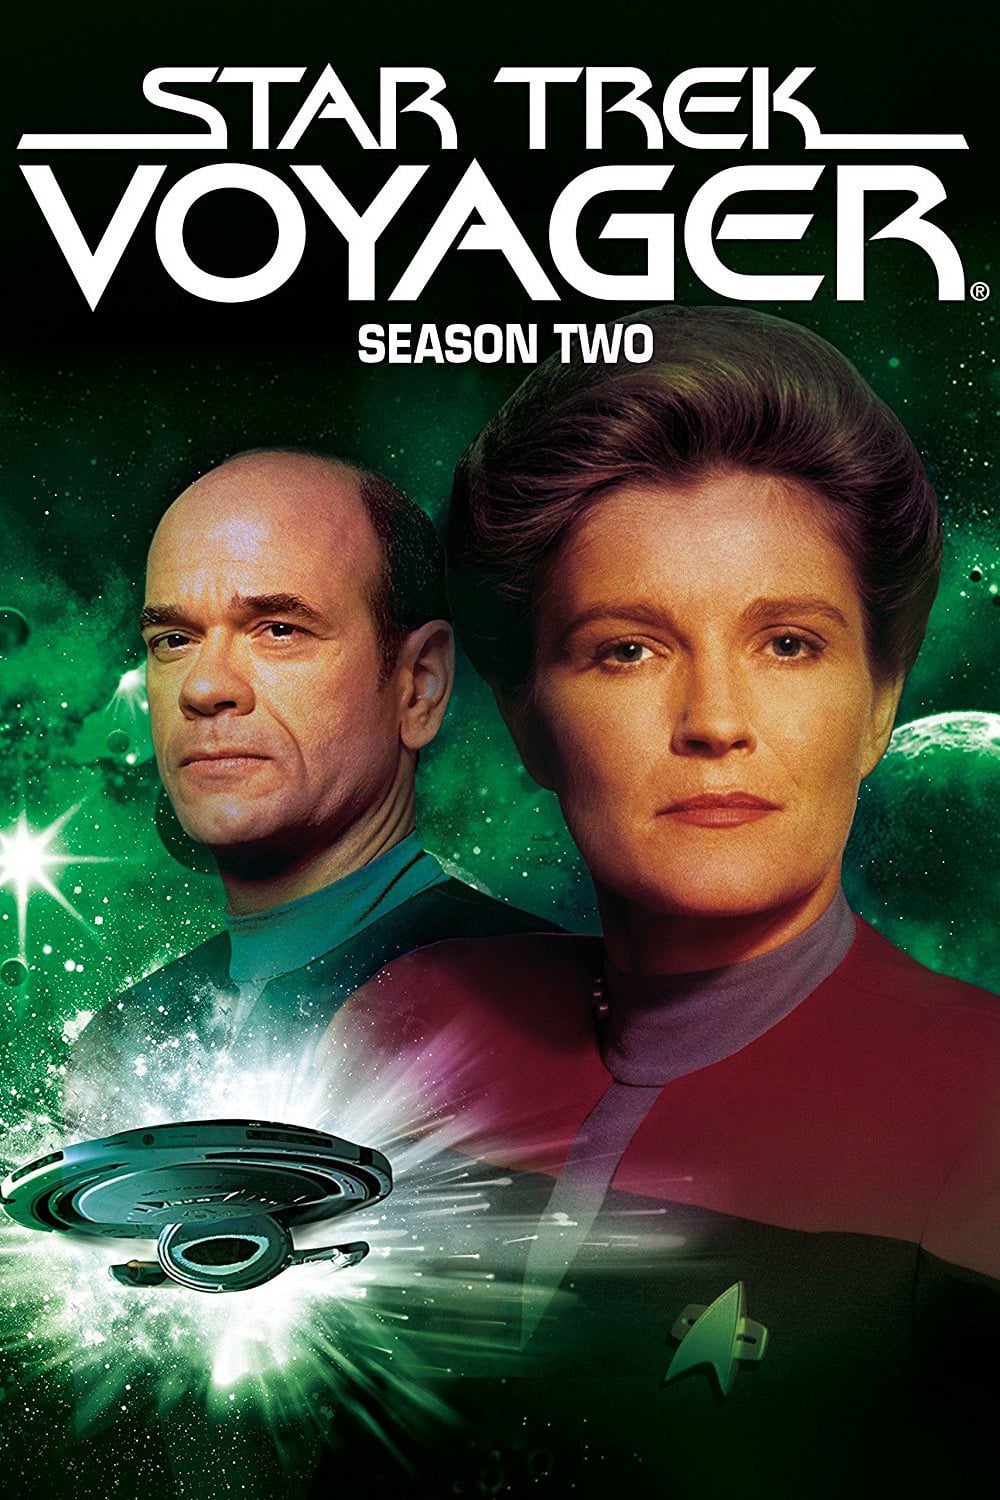 voyager season 2 episode 9